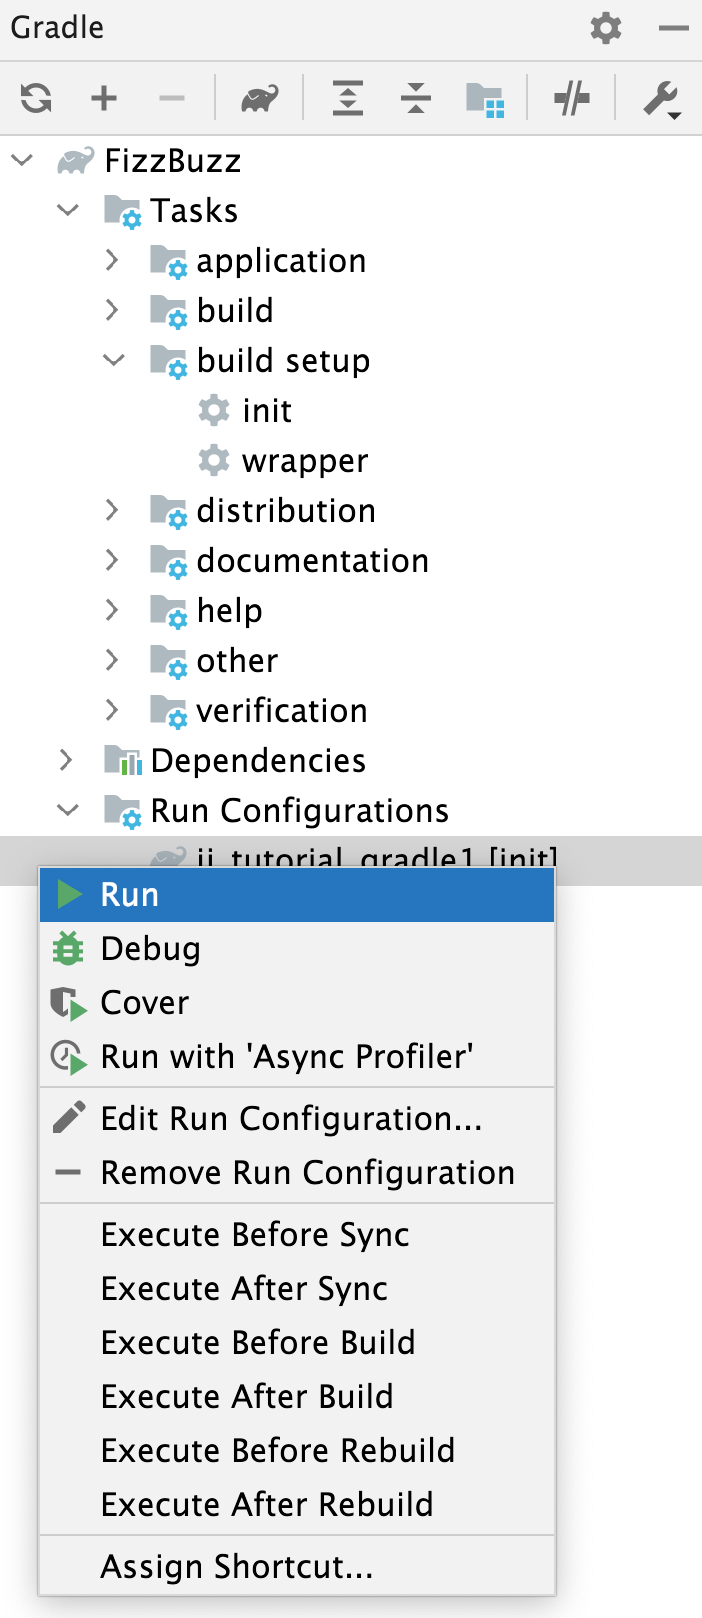 Run Configurations: the context menu